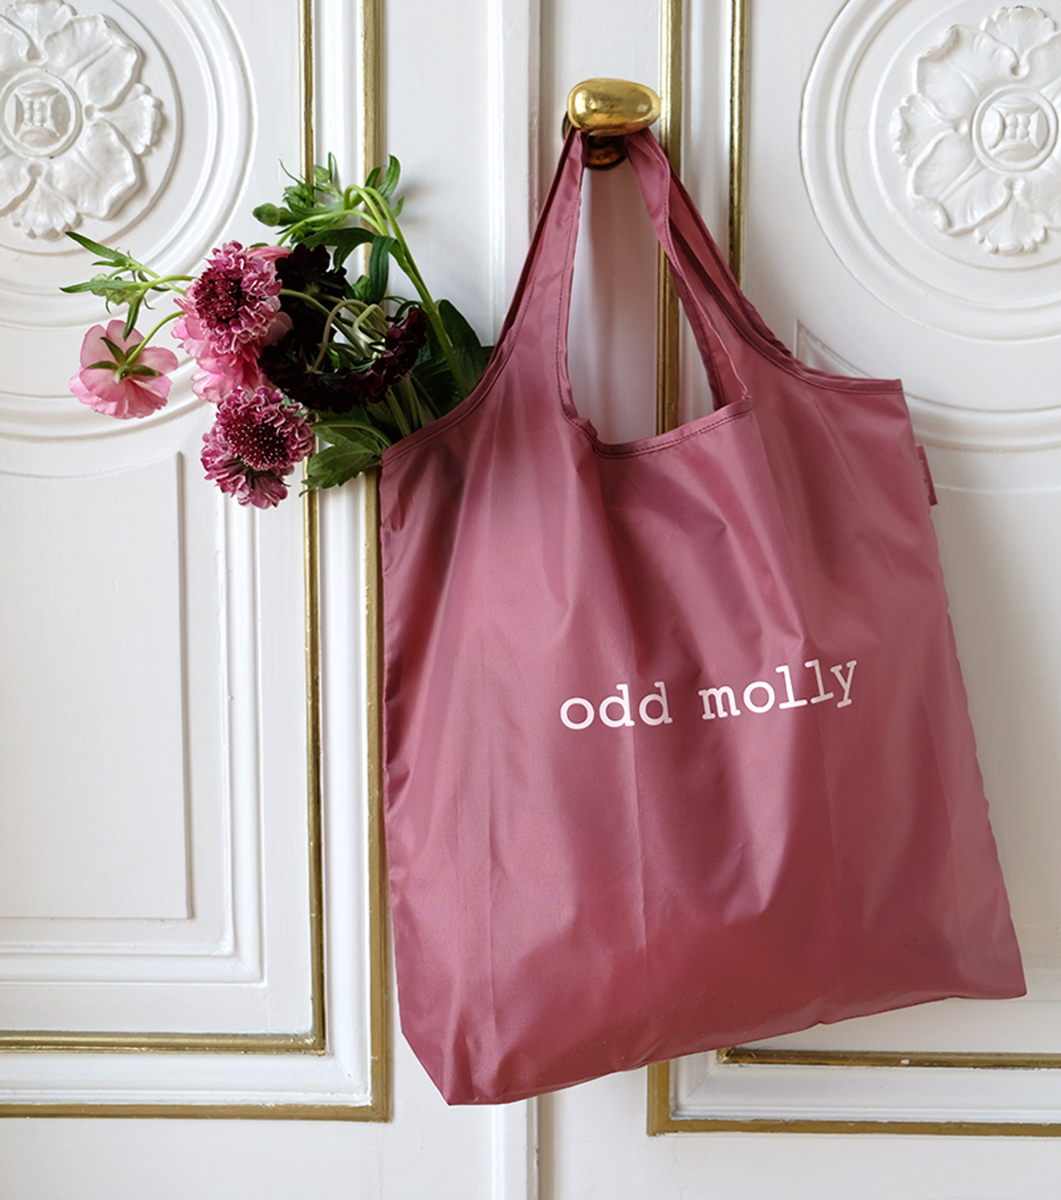 Läs mer om Odd Molly Canvas Bag